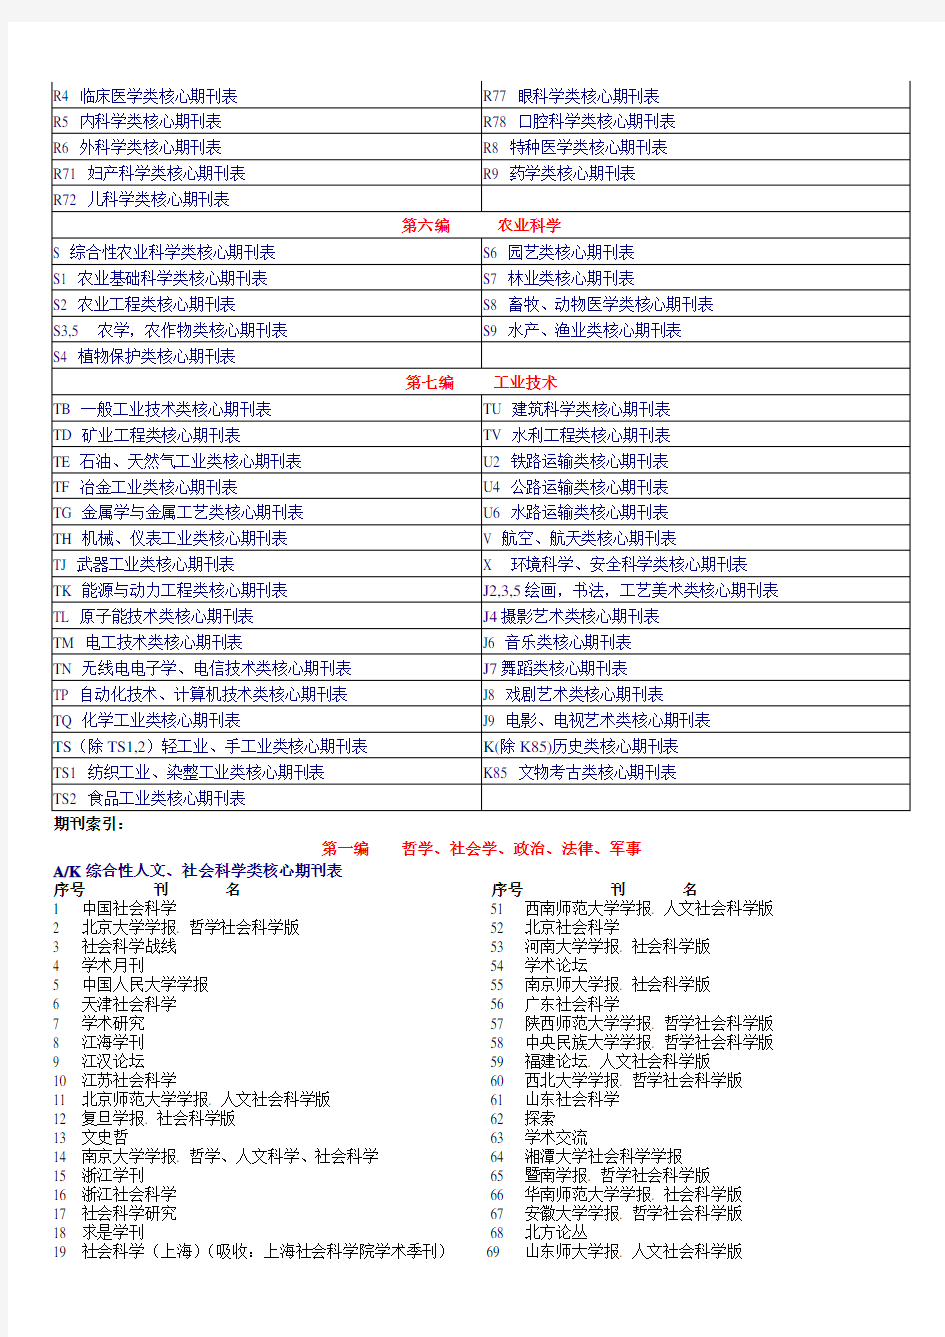 中文核心期刊目录(北大图书馆2004版)